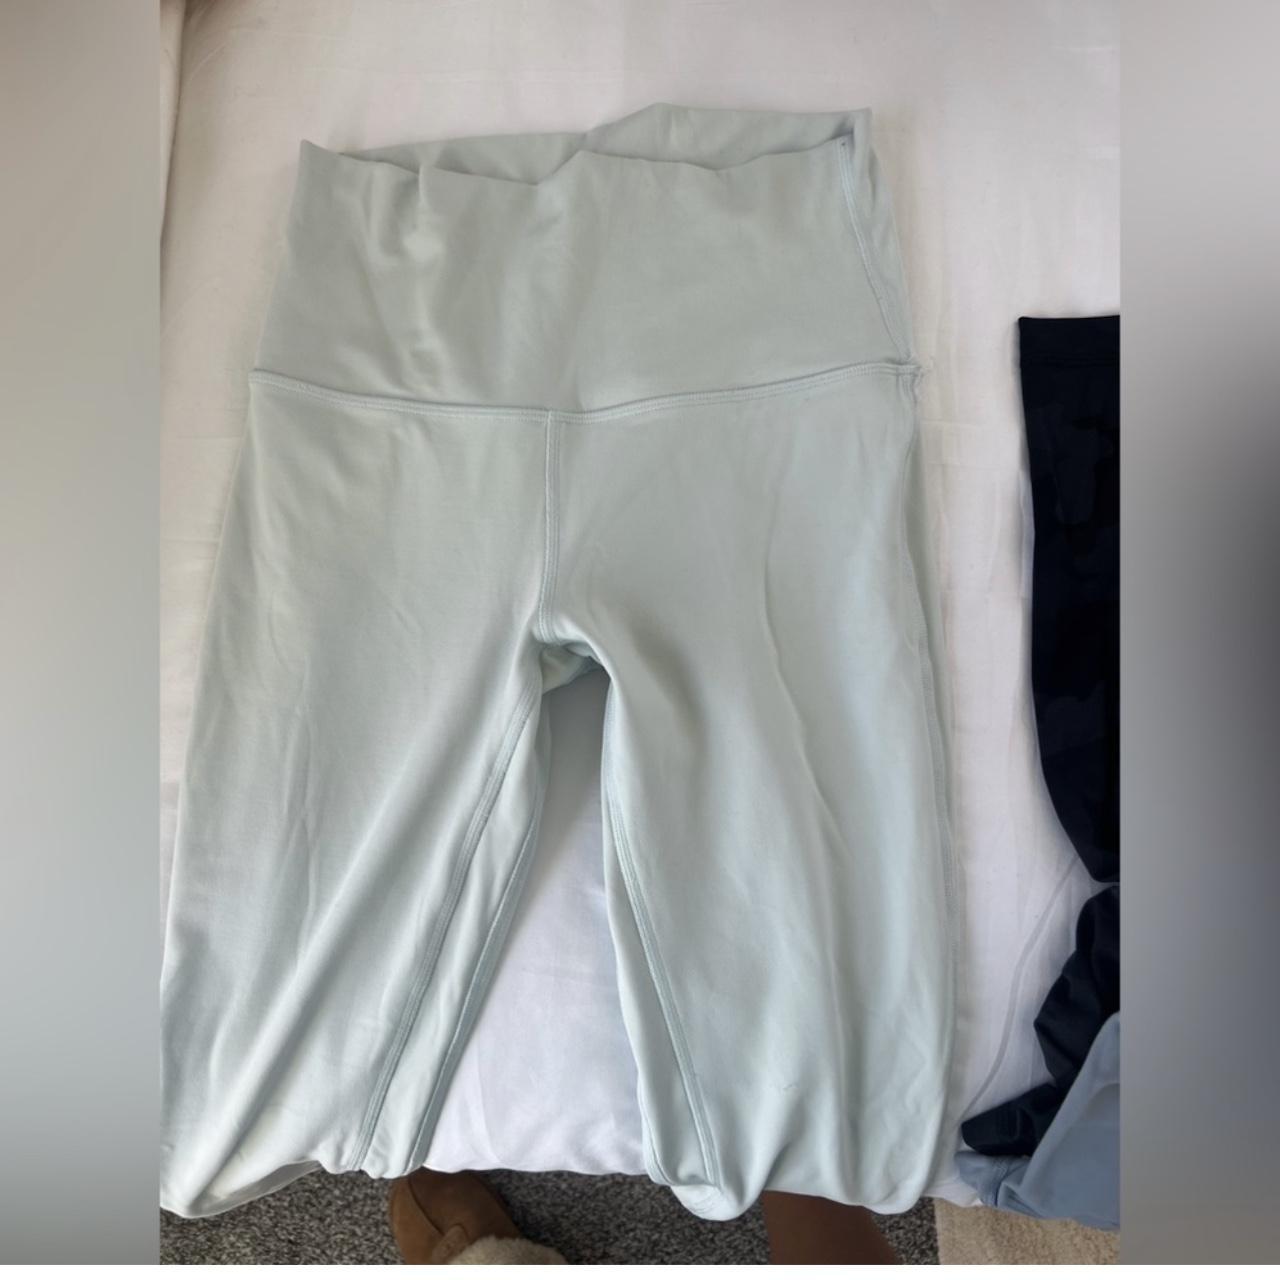 25” size 0 align lululemon leggings never worn - Depop